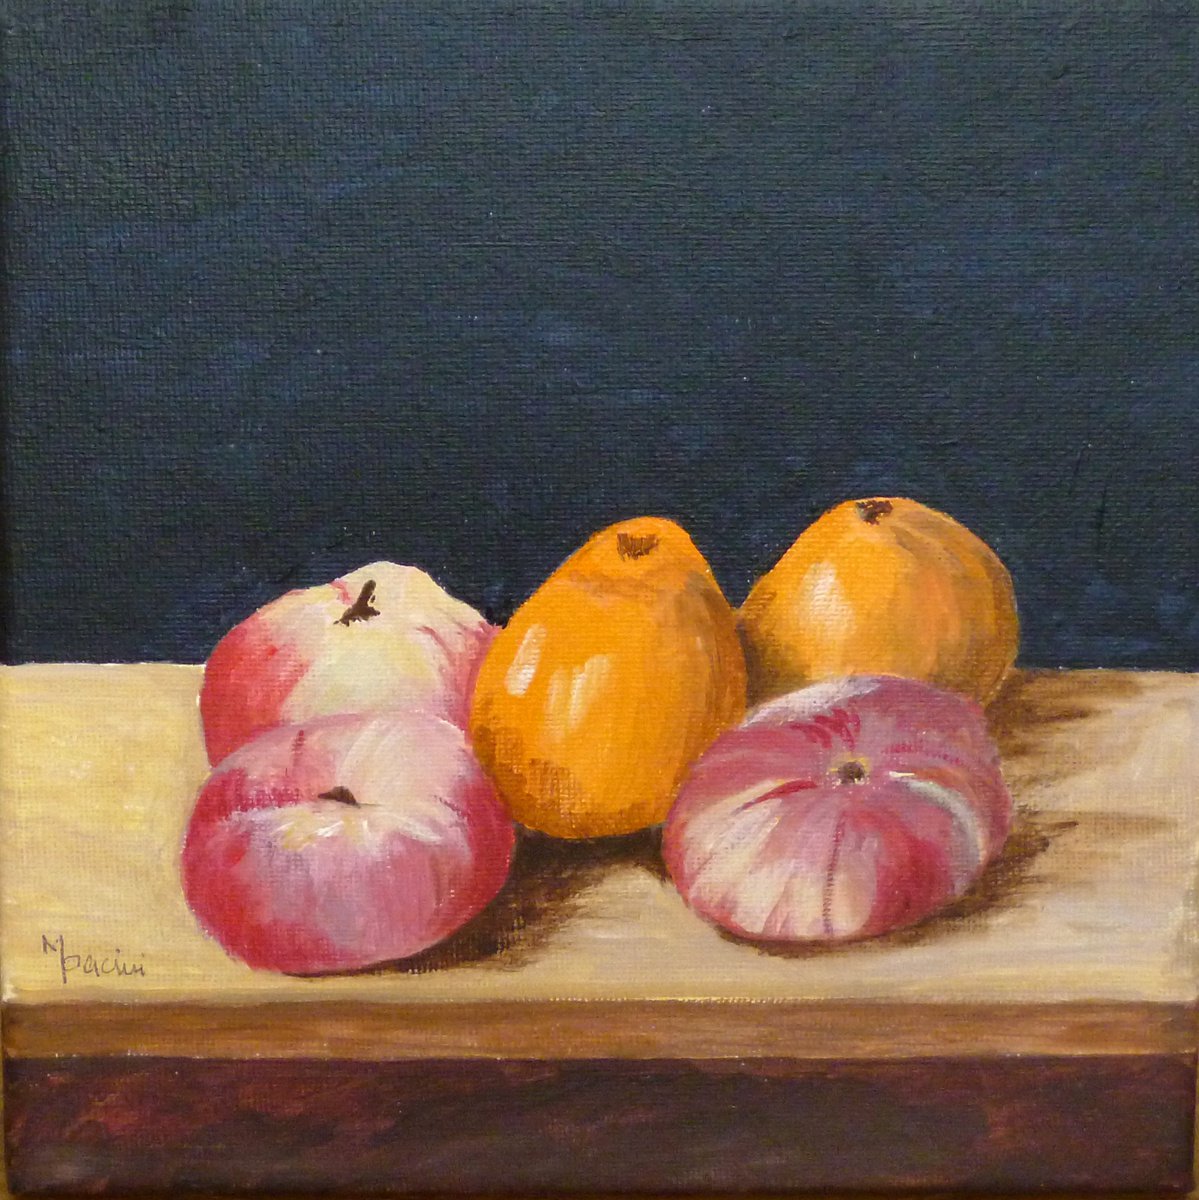 Flat Peaches and Satsumas by Maddalena Pacini